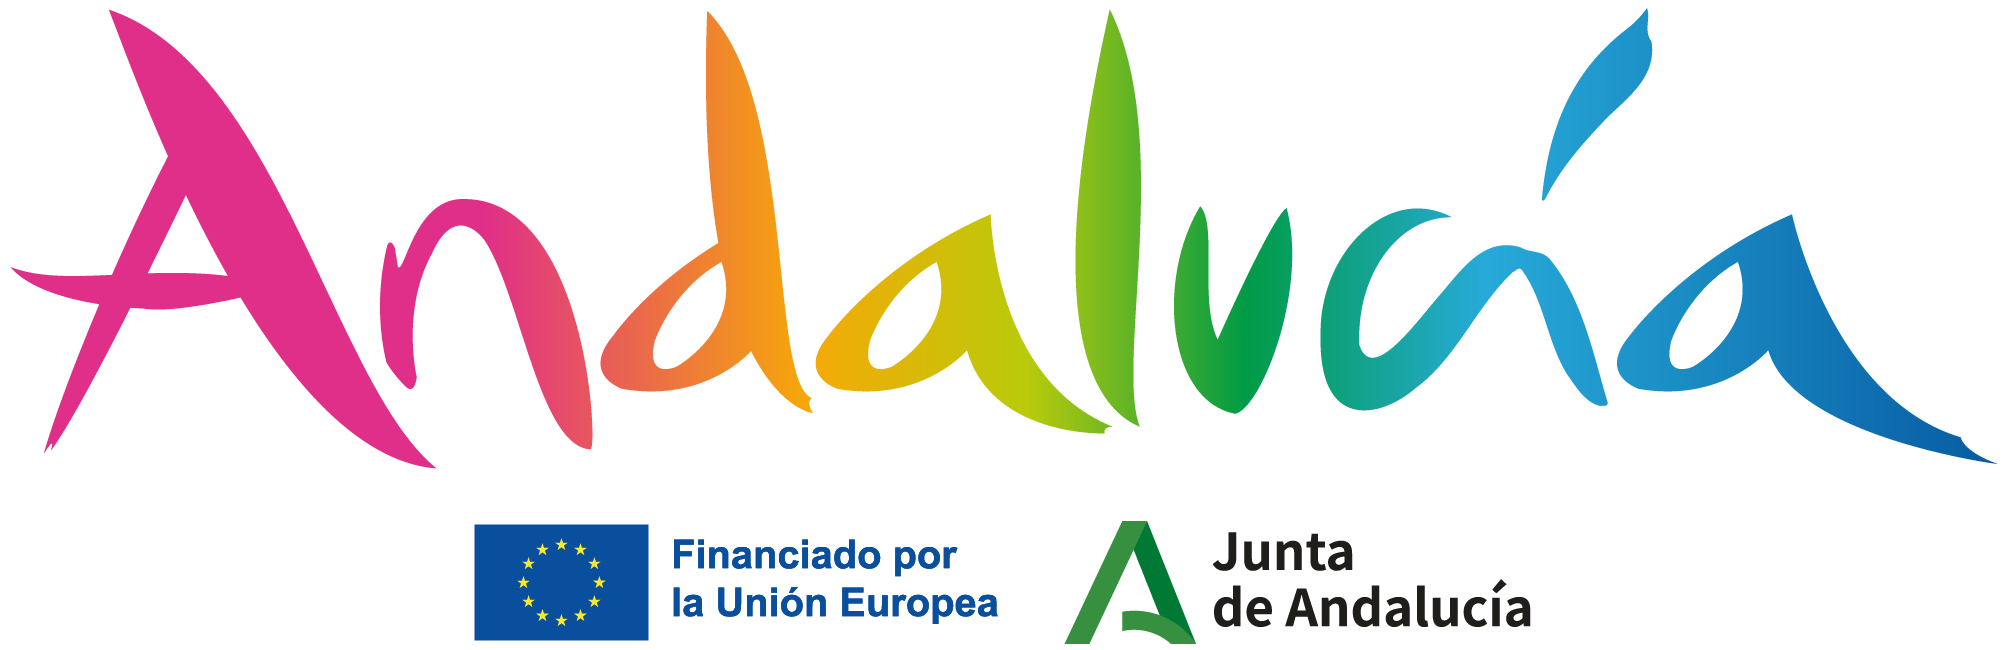 ANDALUCIA logo